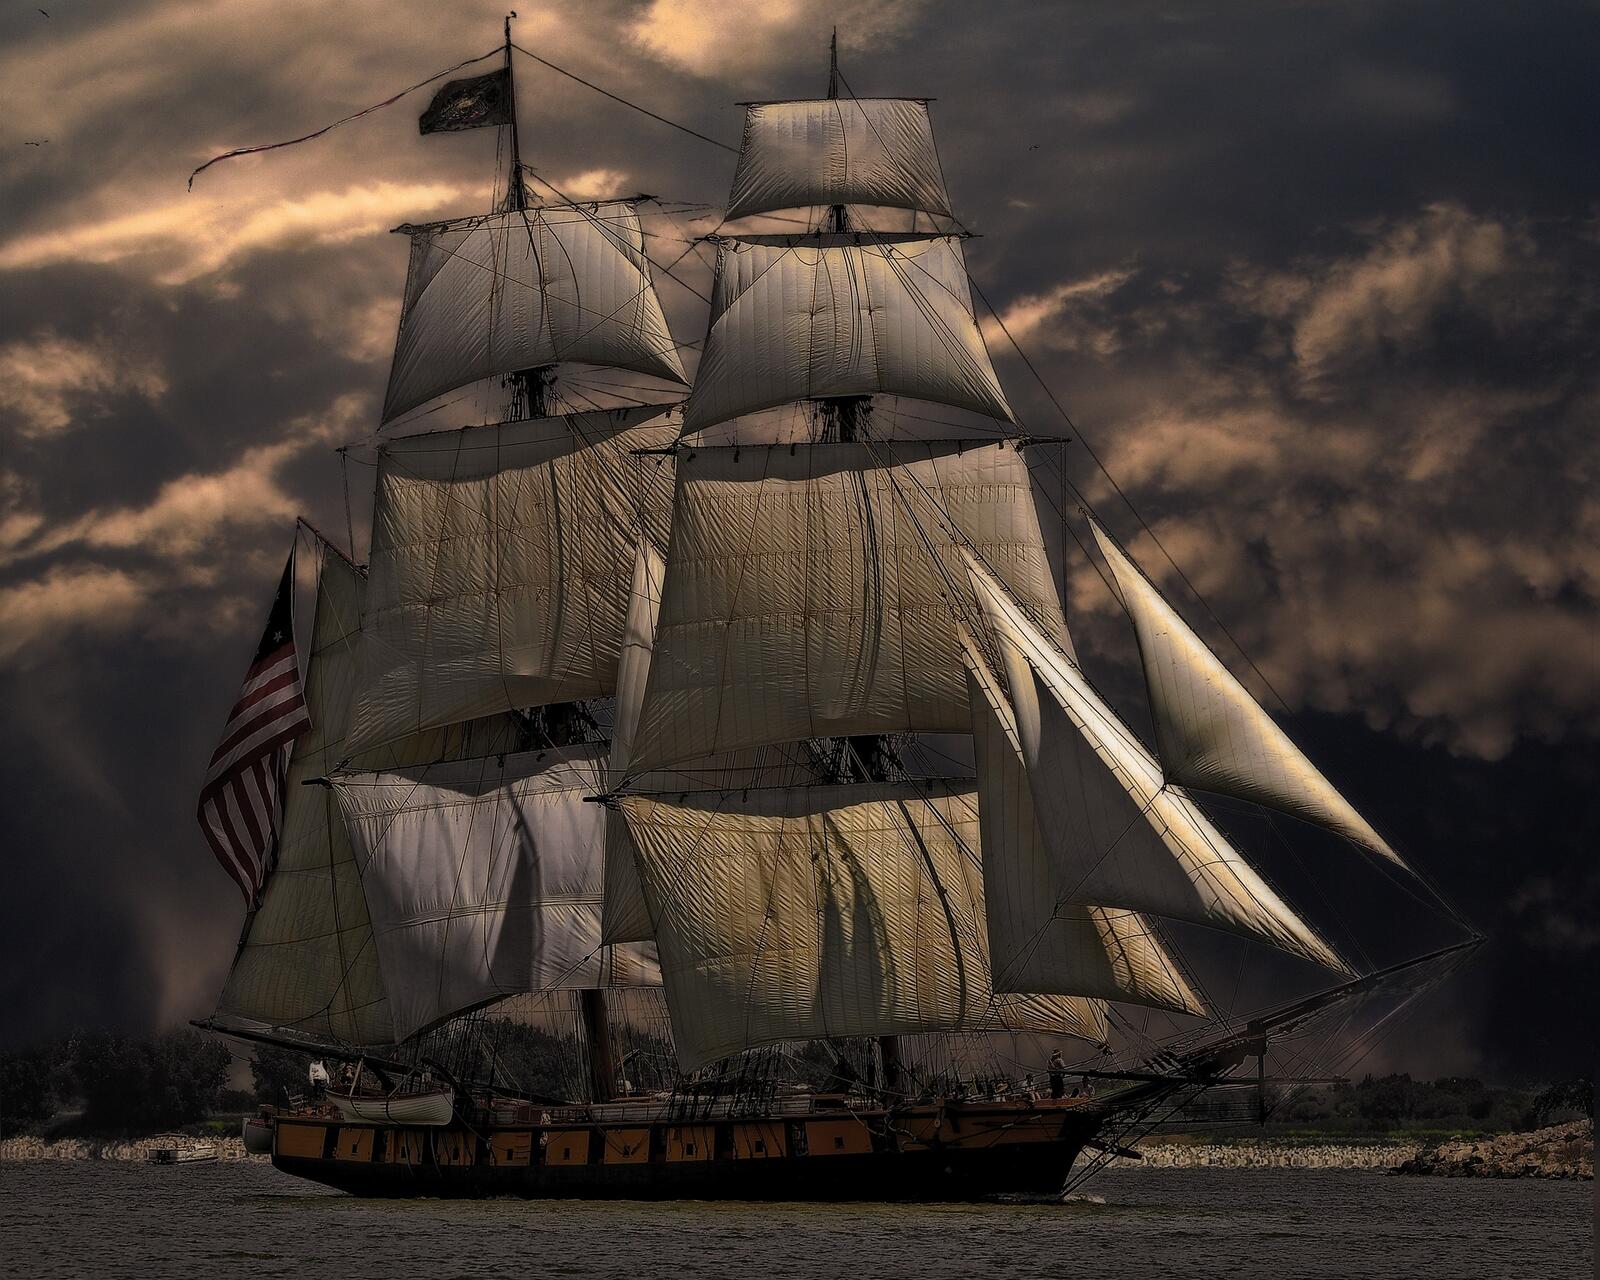 Бесплатное фото Большой парусный корабль на фоне пасмурного неба